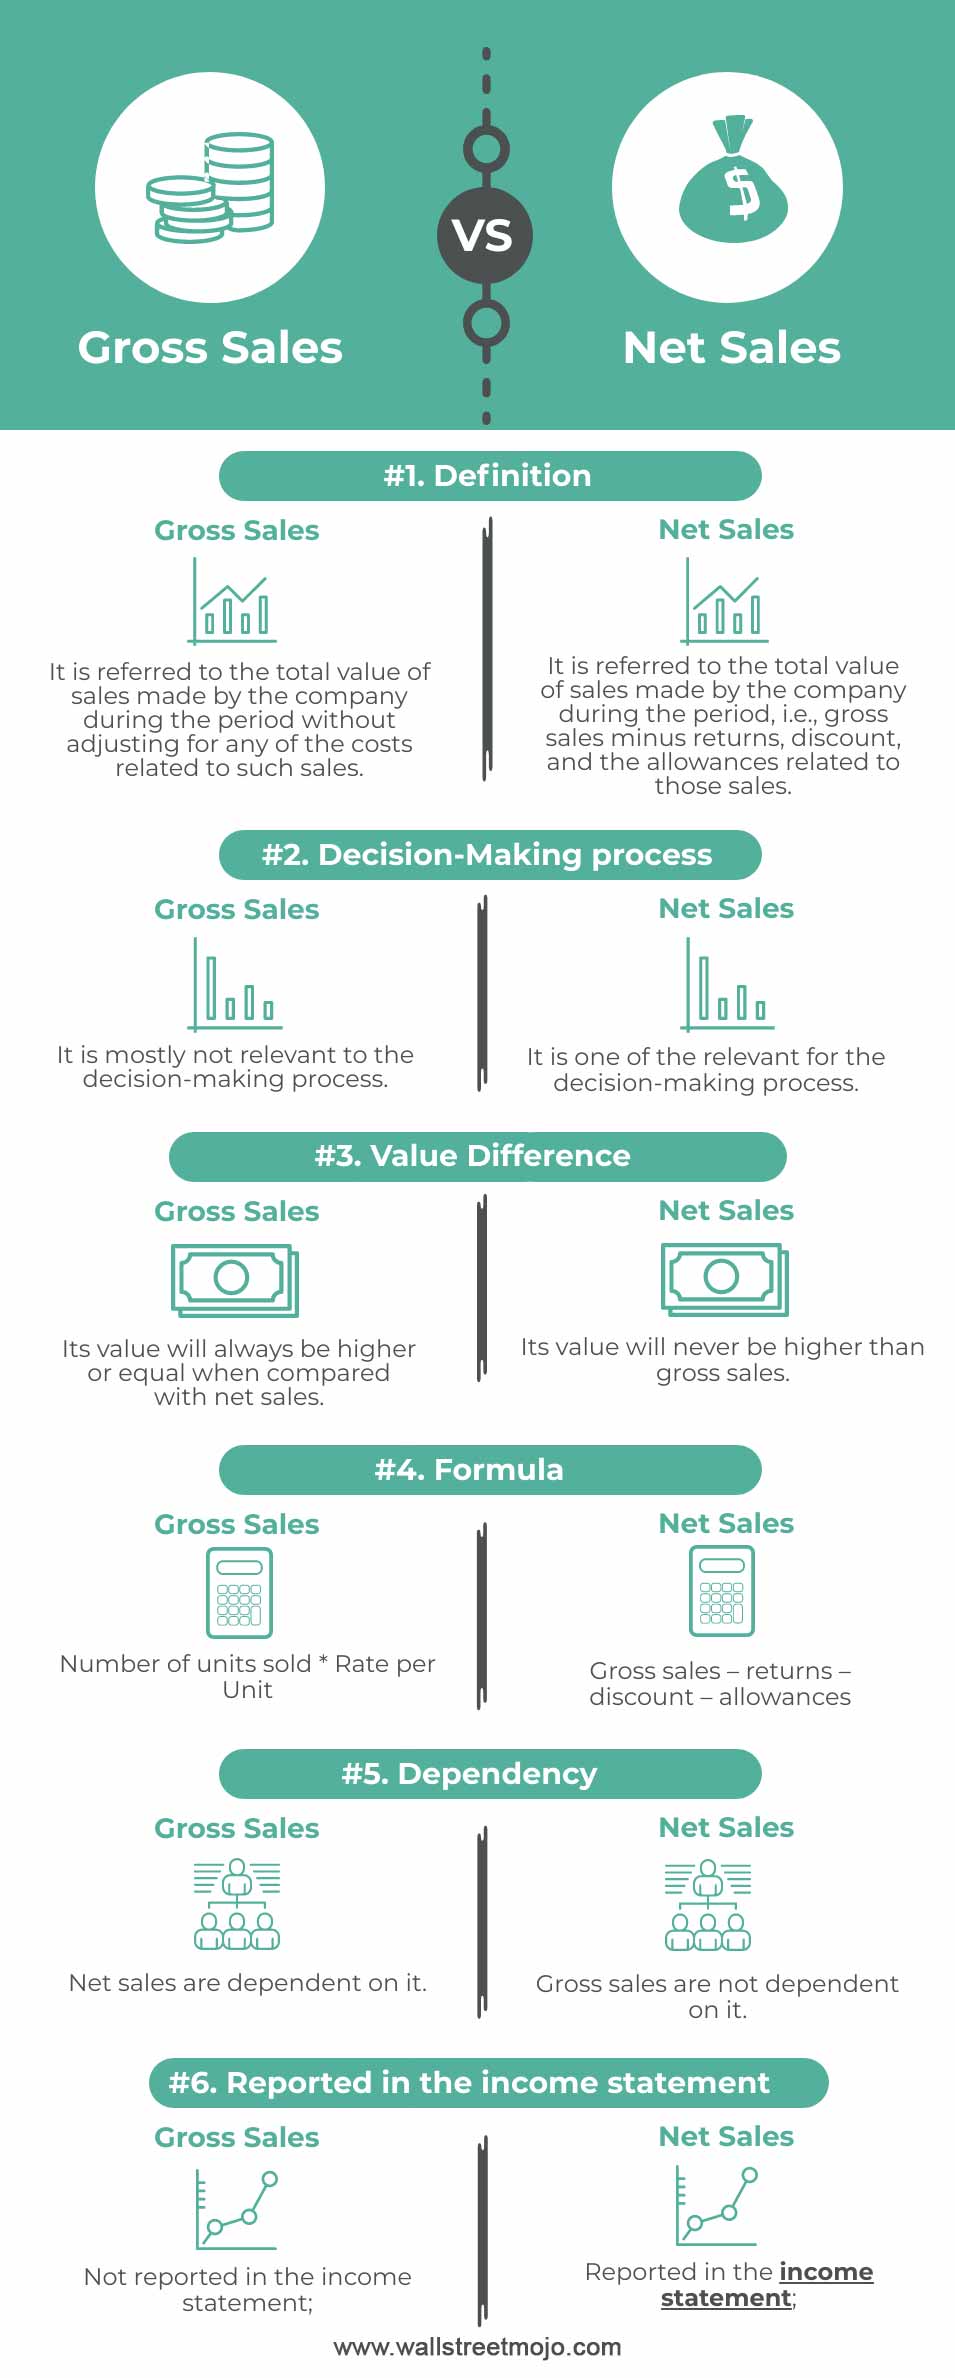 Gross-Sales-vs-Net-Sales-info